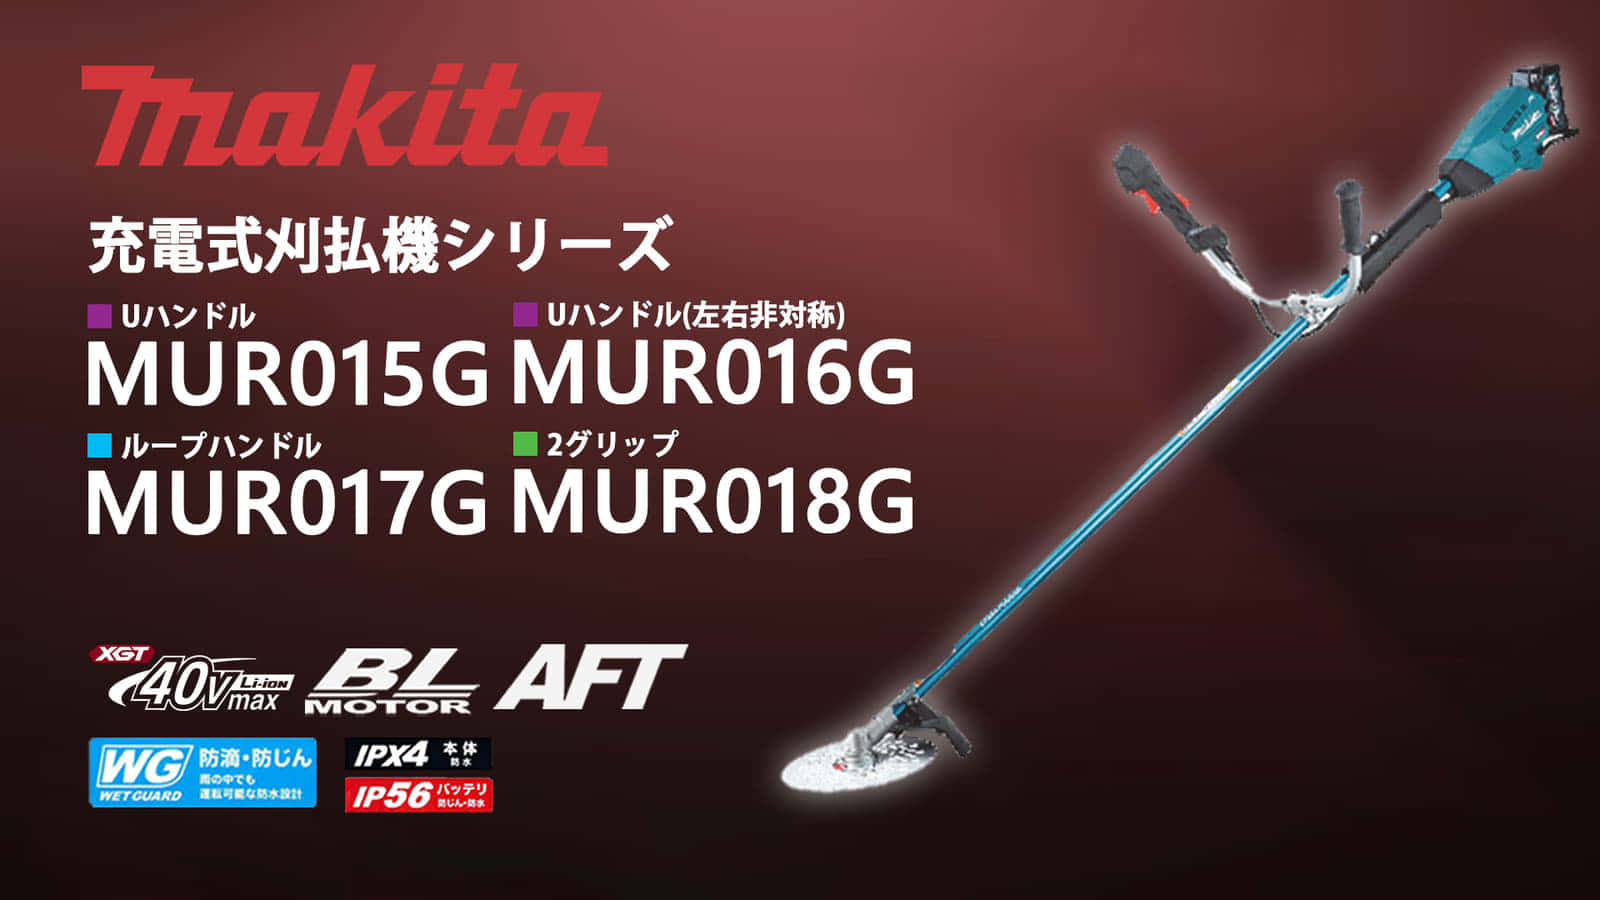 マキタ MUR015Gシリーズ 充電式草刈機を発売、振りやすく疲れにくい23mL相当軽量モデル